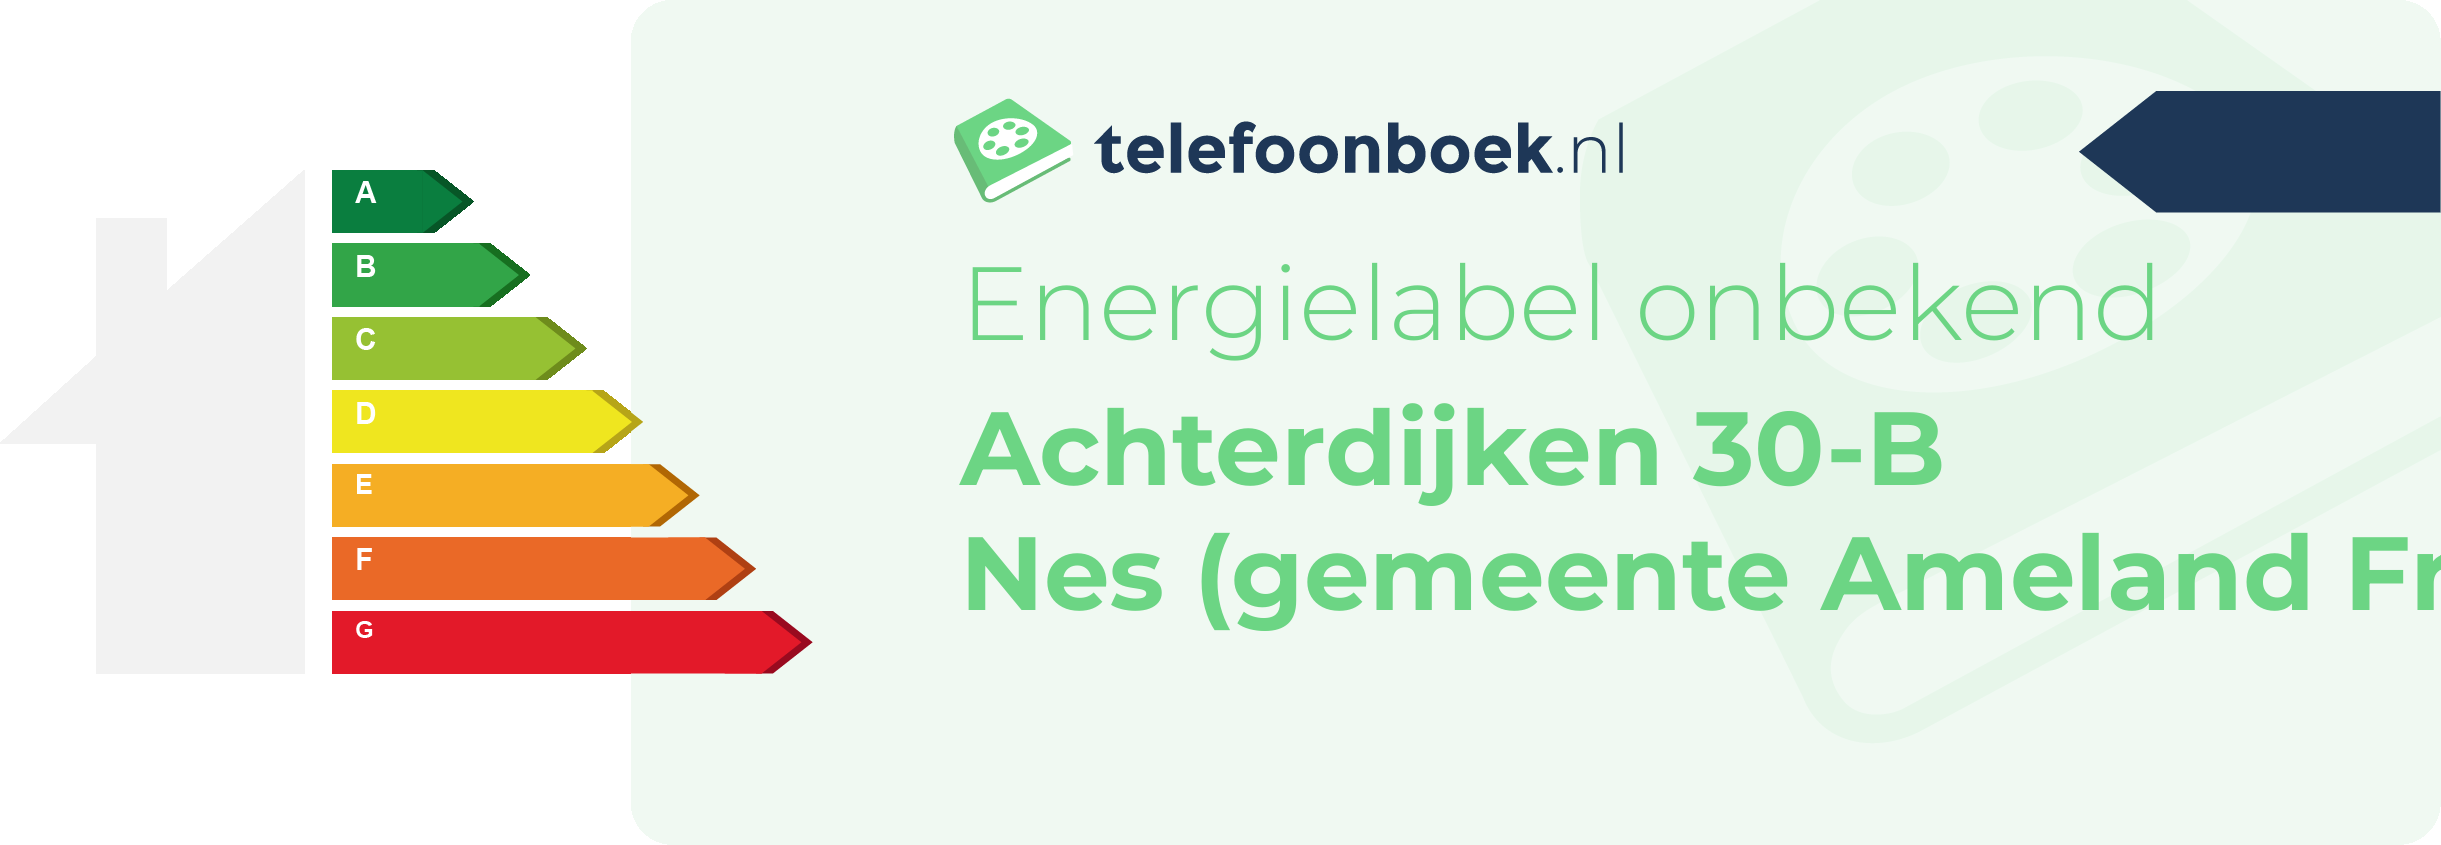 Energielabel Achterdijken 30-B Nes (gemeente Ameland Friesland)